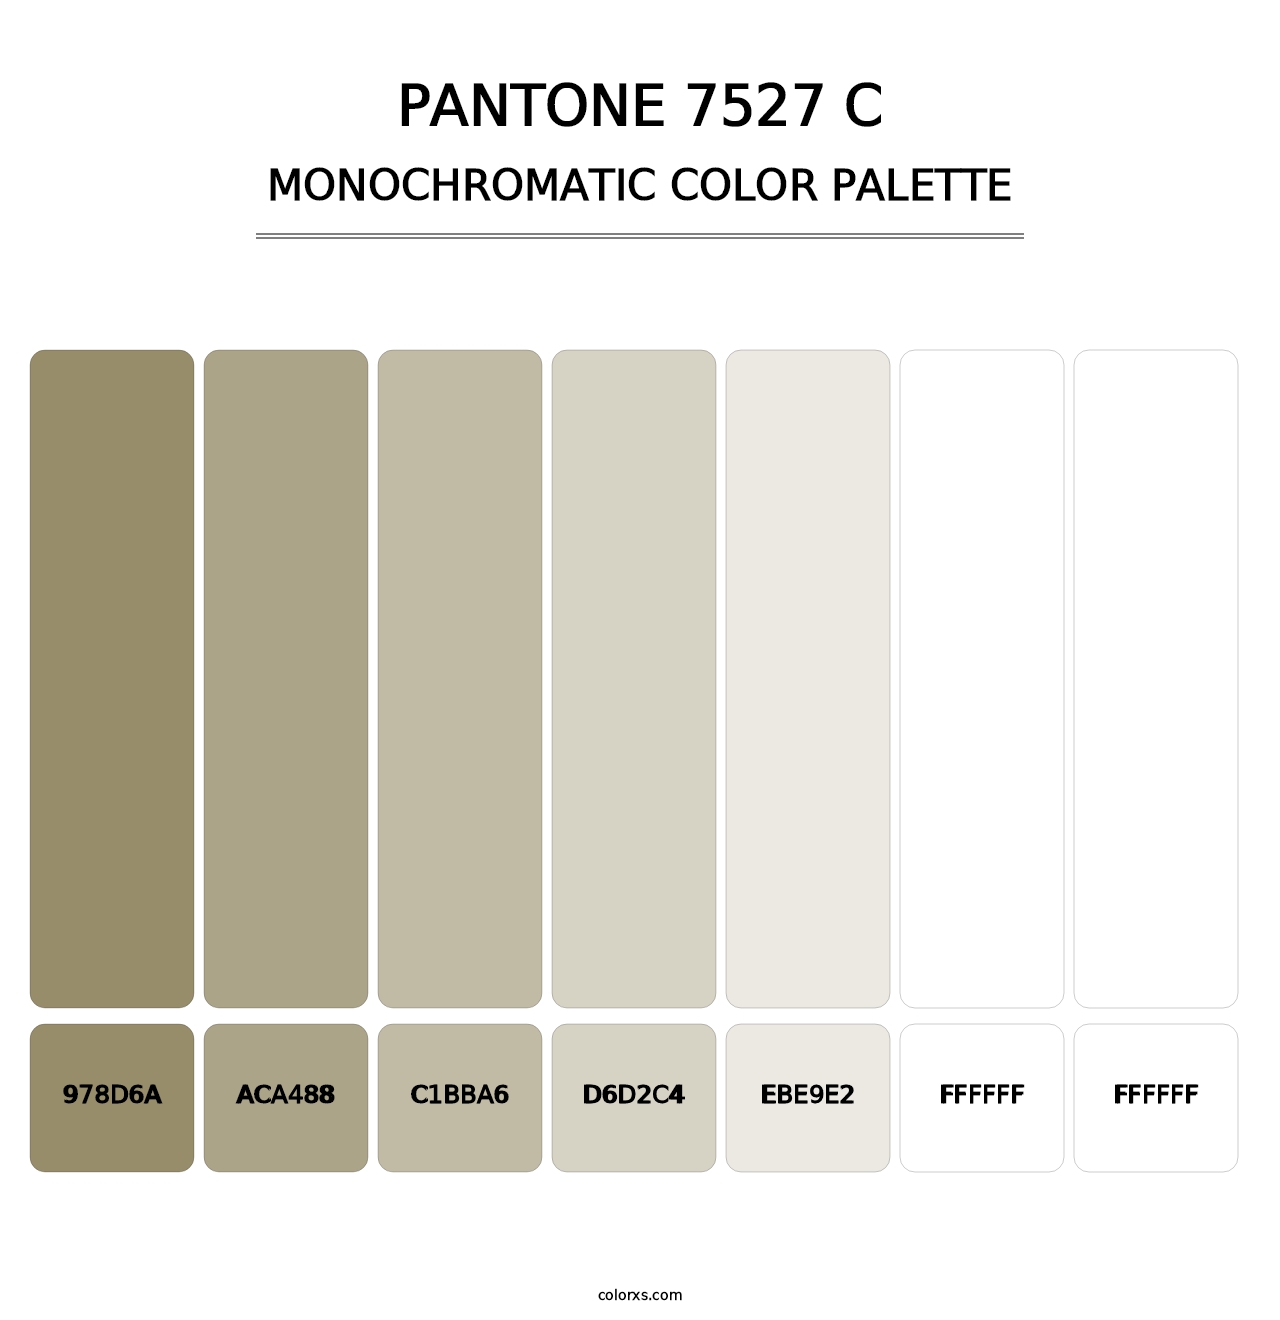 PANTONE 7527 C - Monochromatic Color Palette